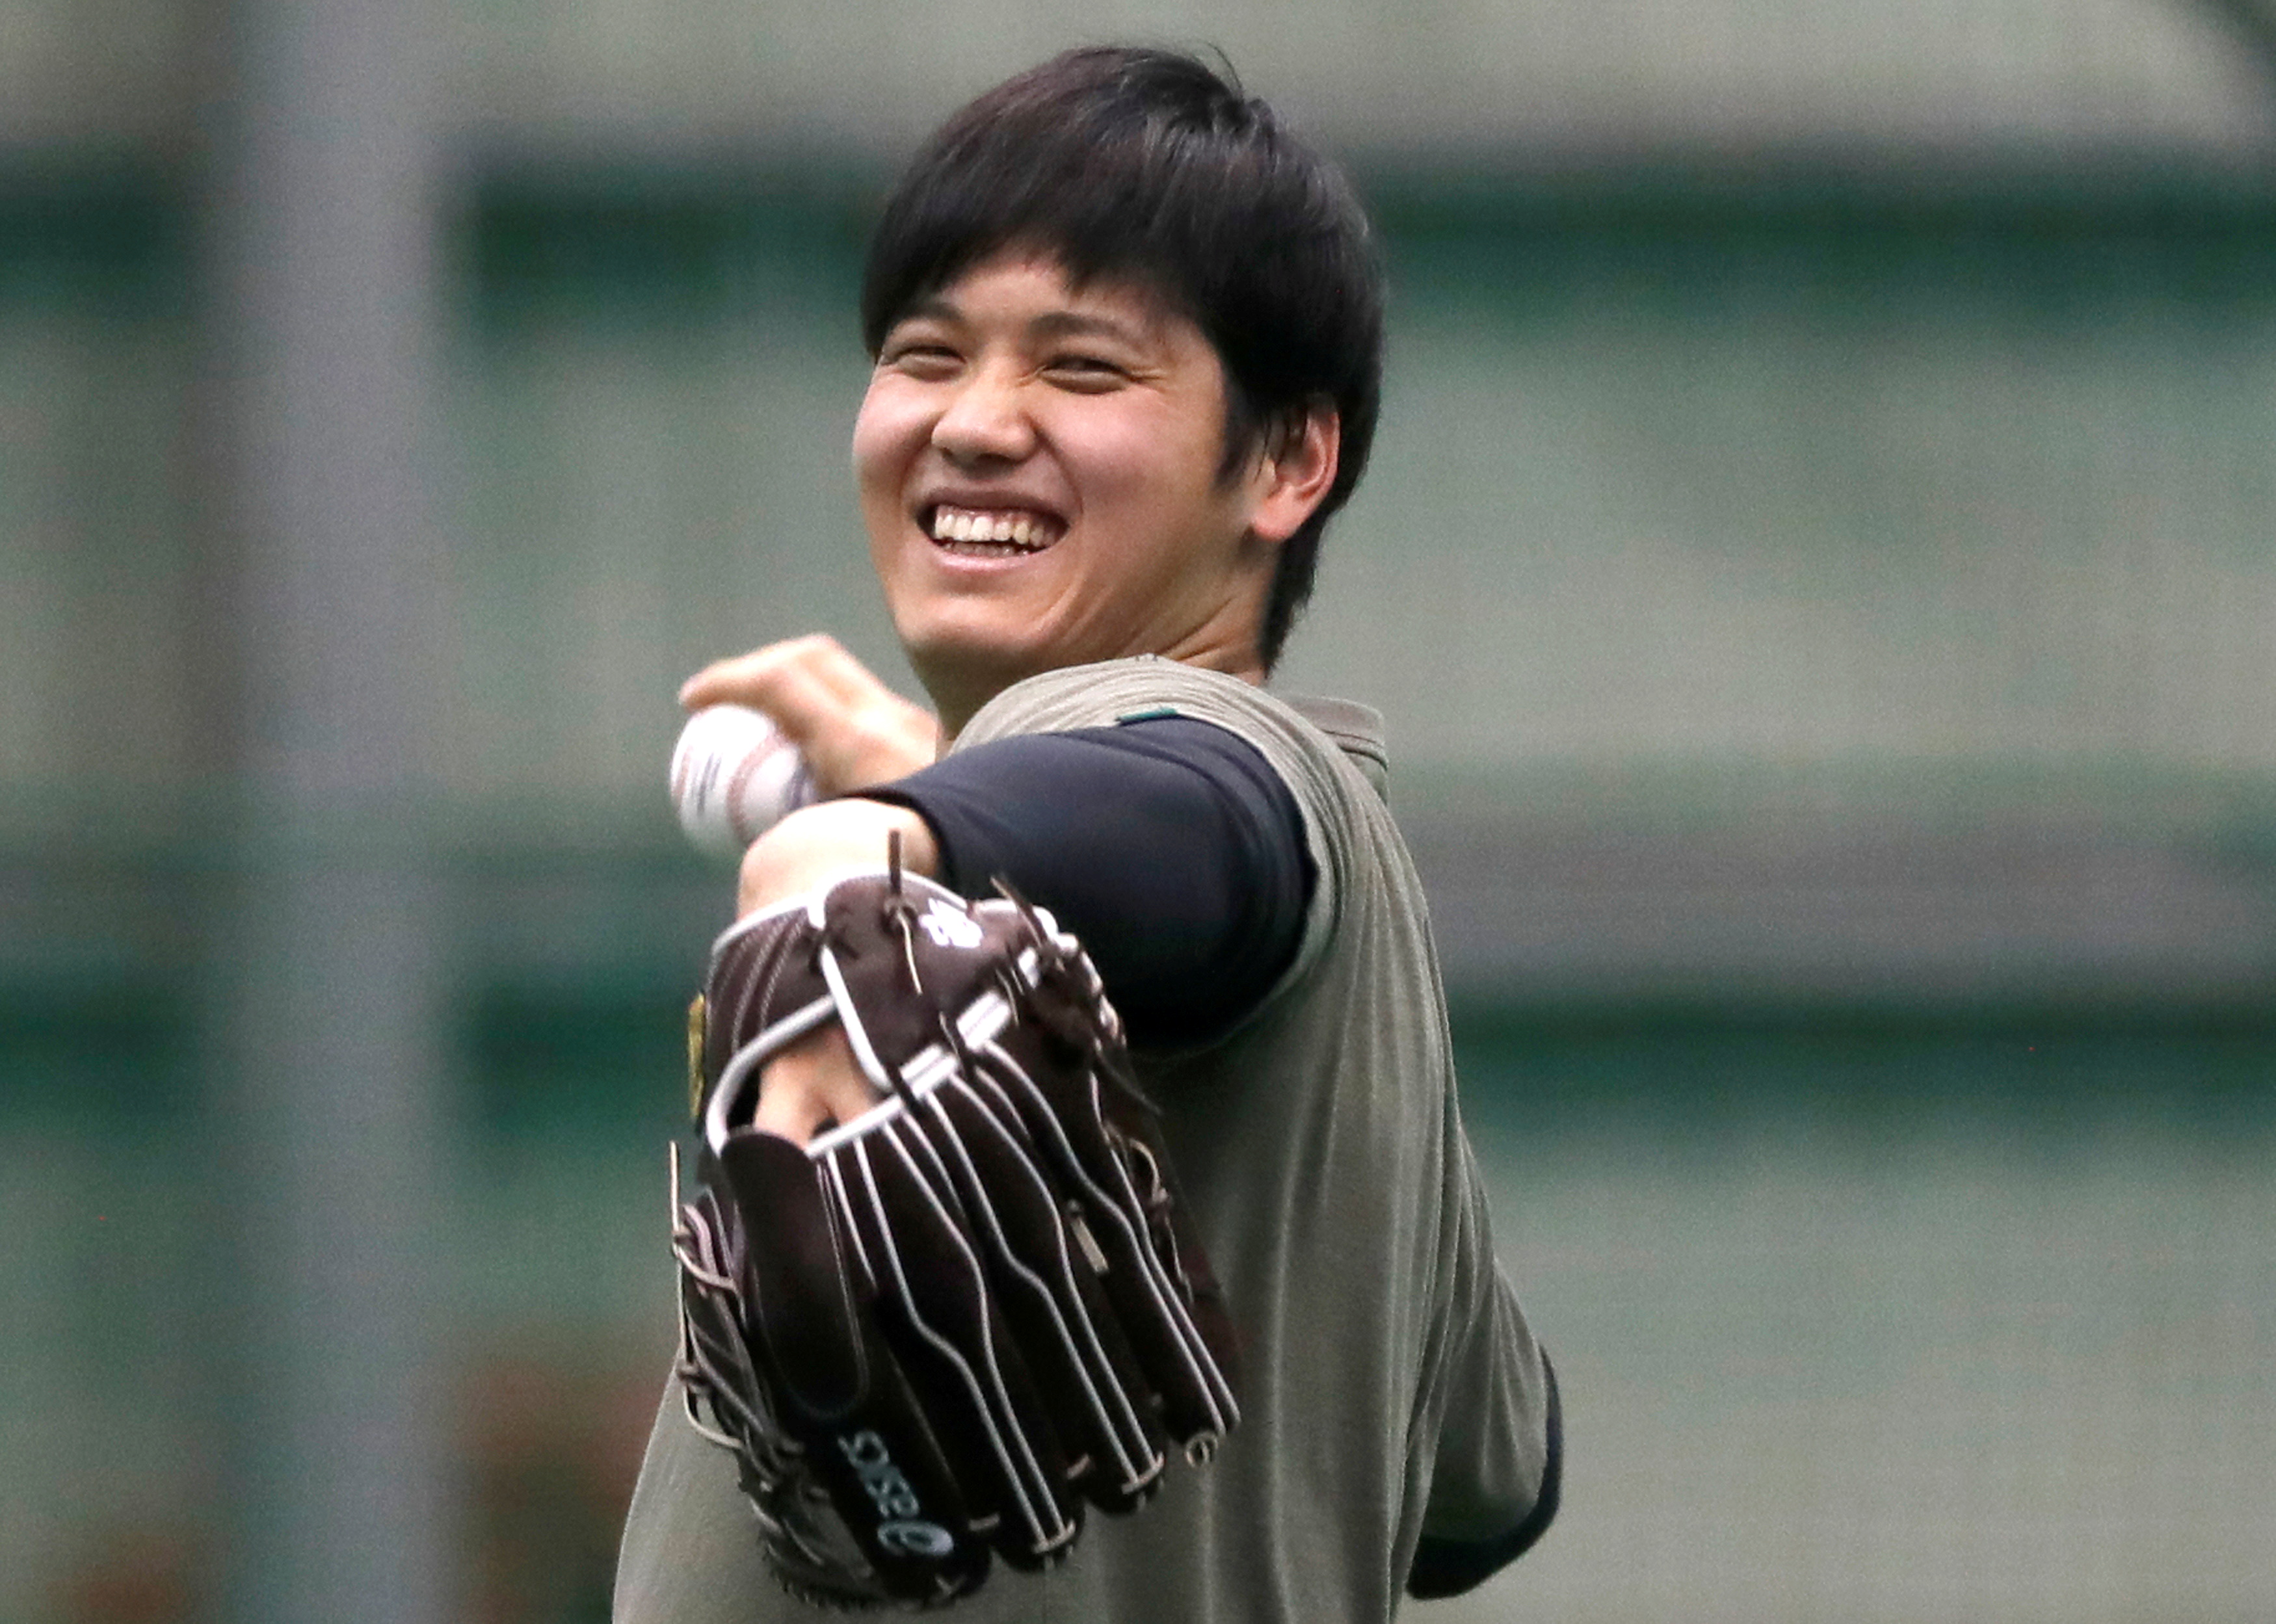 Banners, lights as Japan hails MVP award for baseballer Ohtani